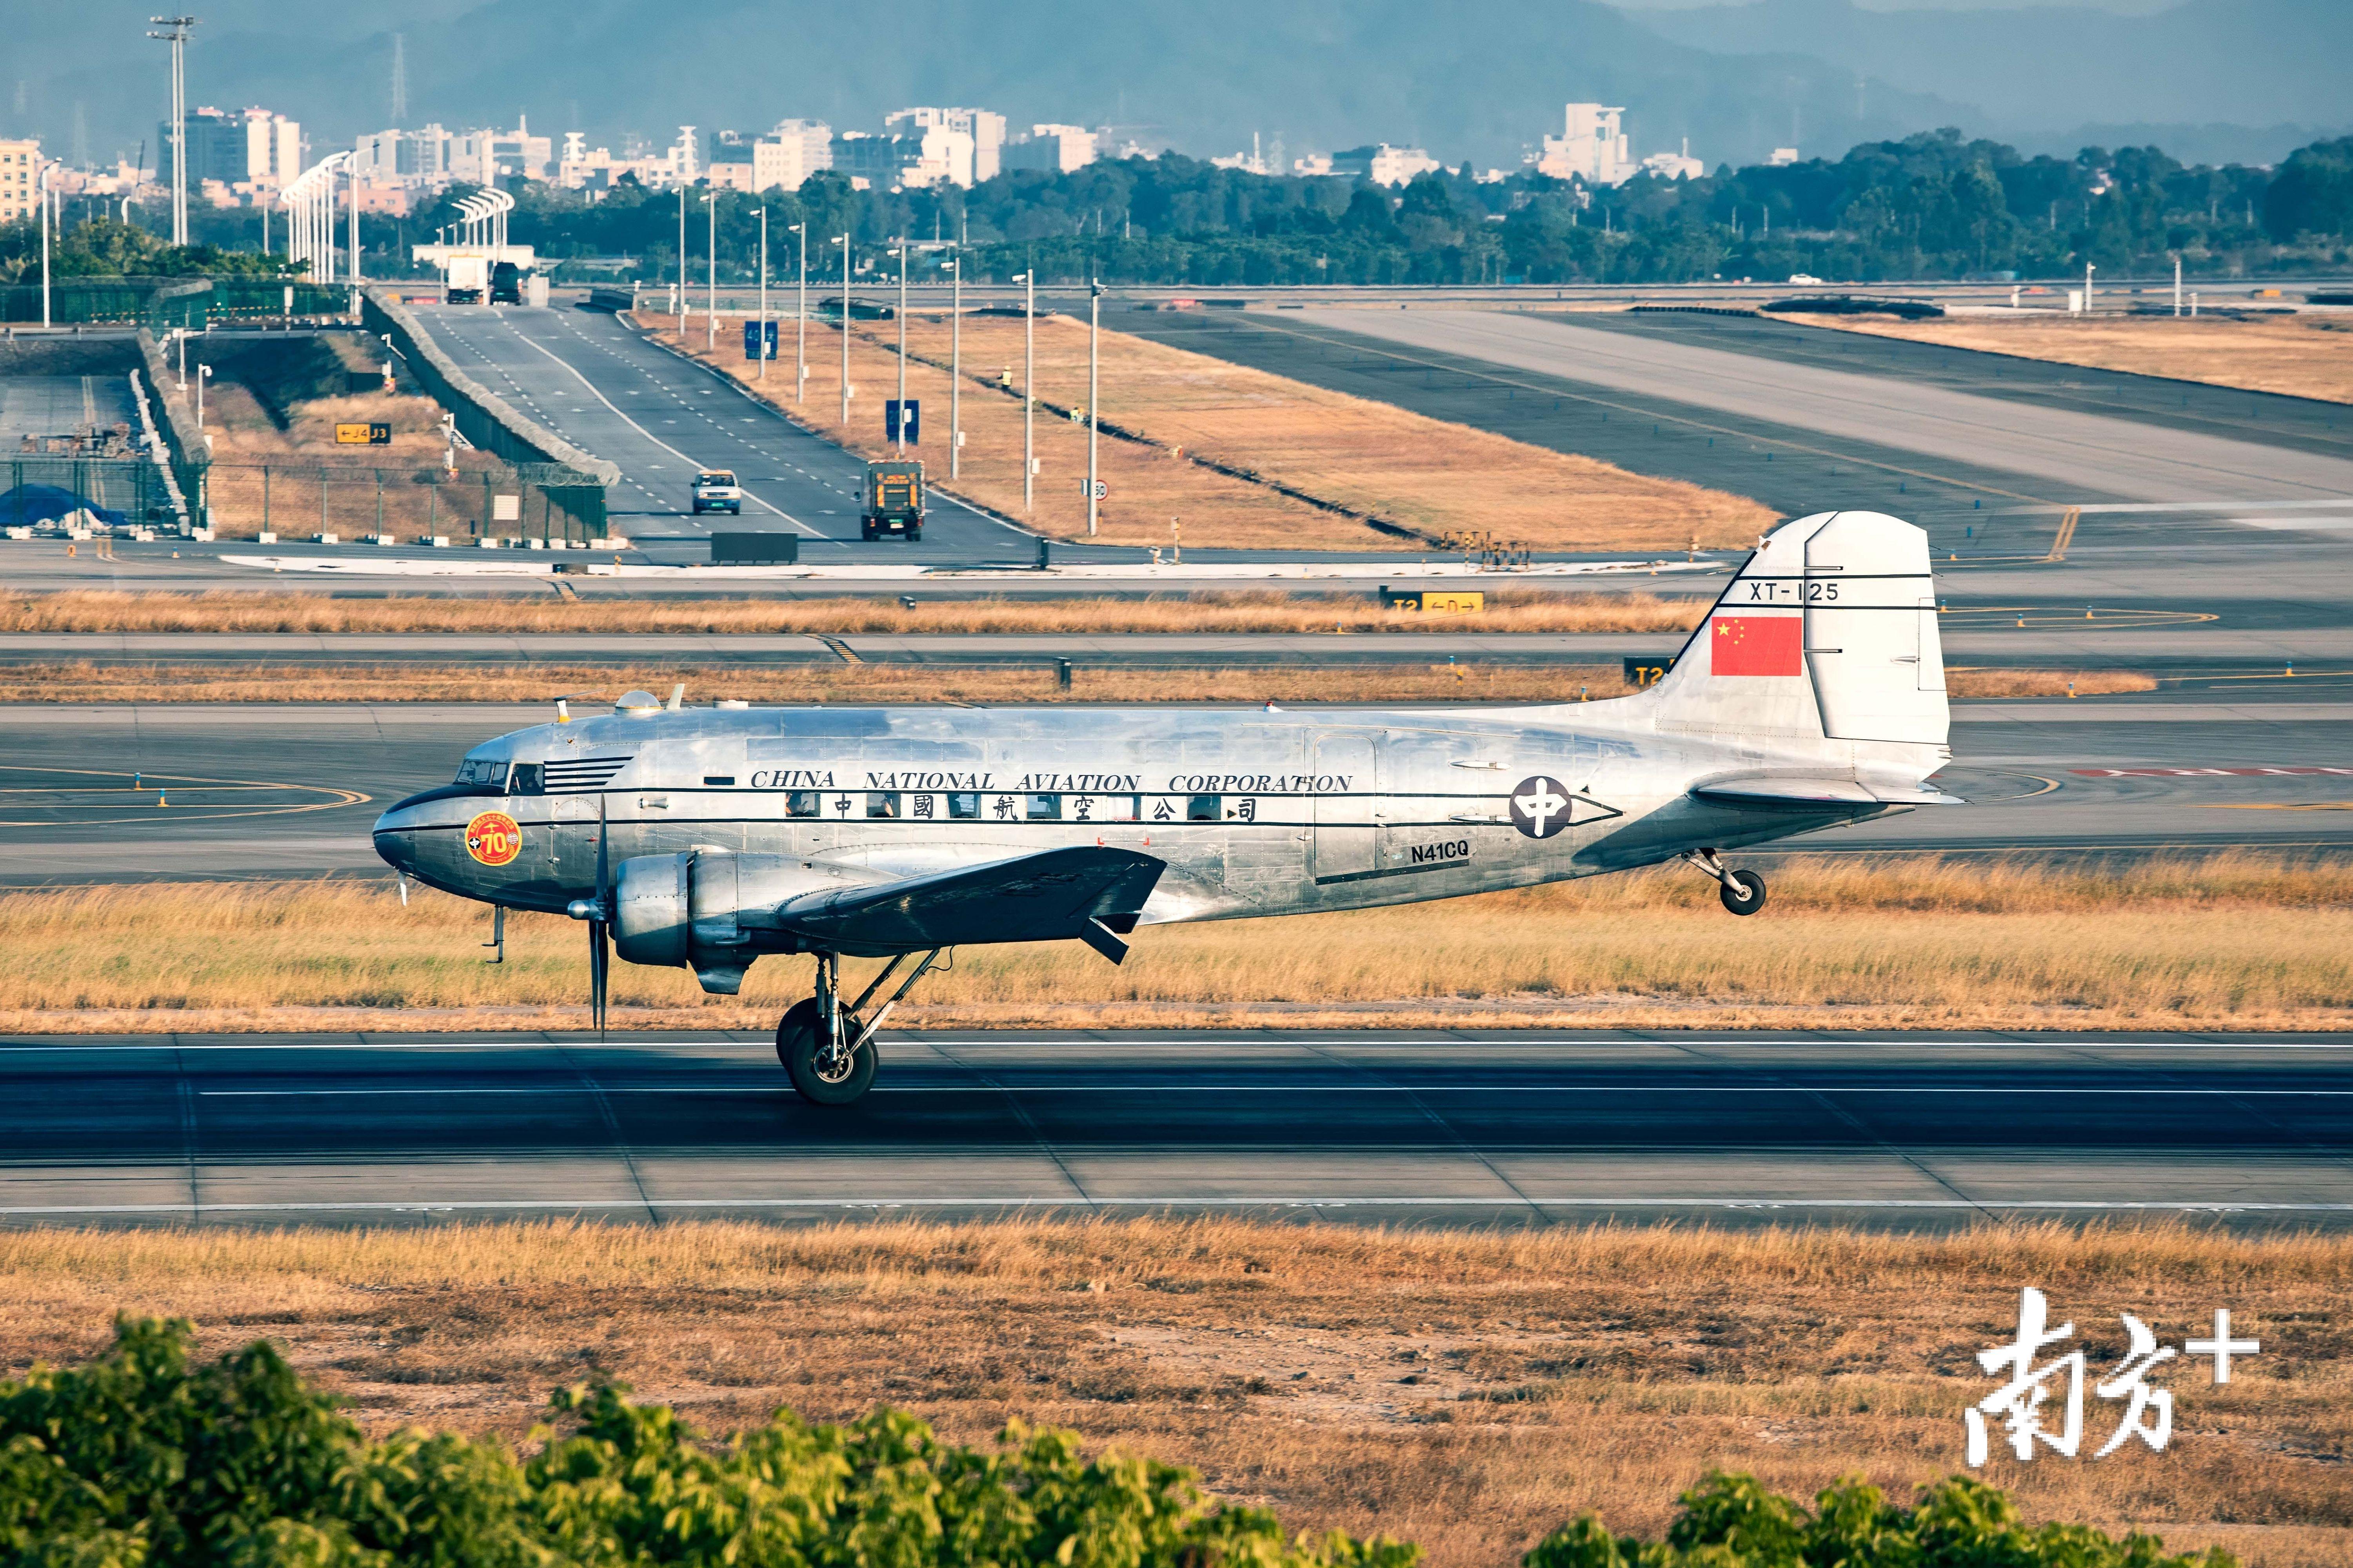 12月4日，75年机龄、曾参加两航起义的DC3型飞机，由香港飞抵广州白云机场，计划用三天时间重走两航起义的飞行线路，以此纪念两航起义七十周年。江总 摄